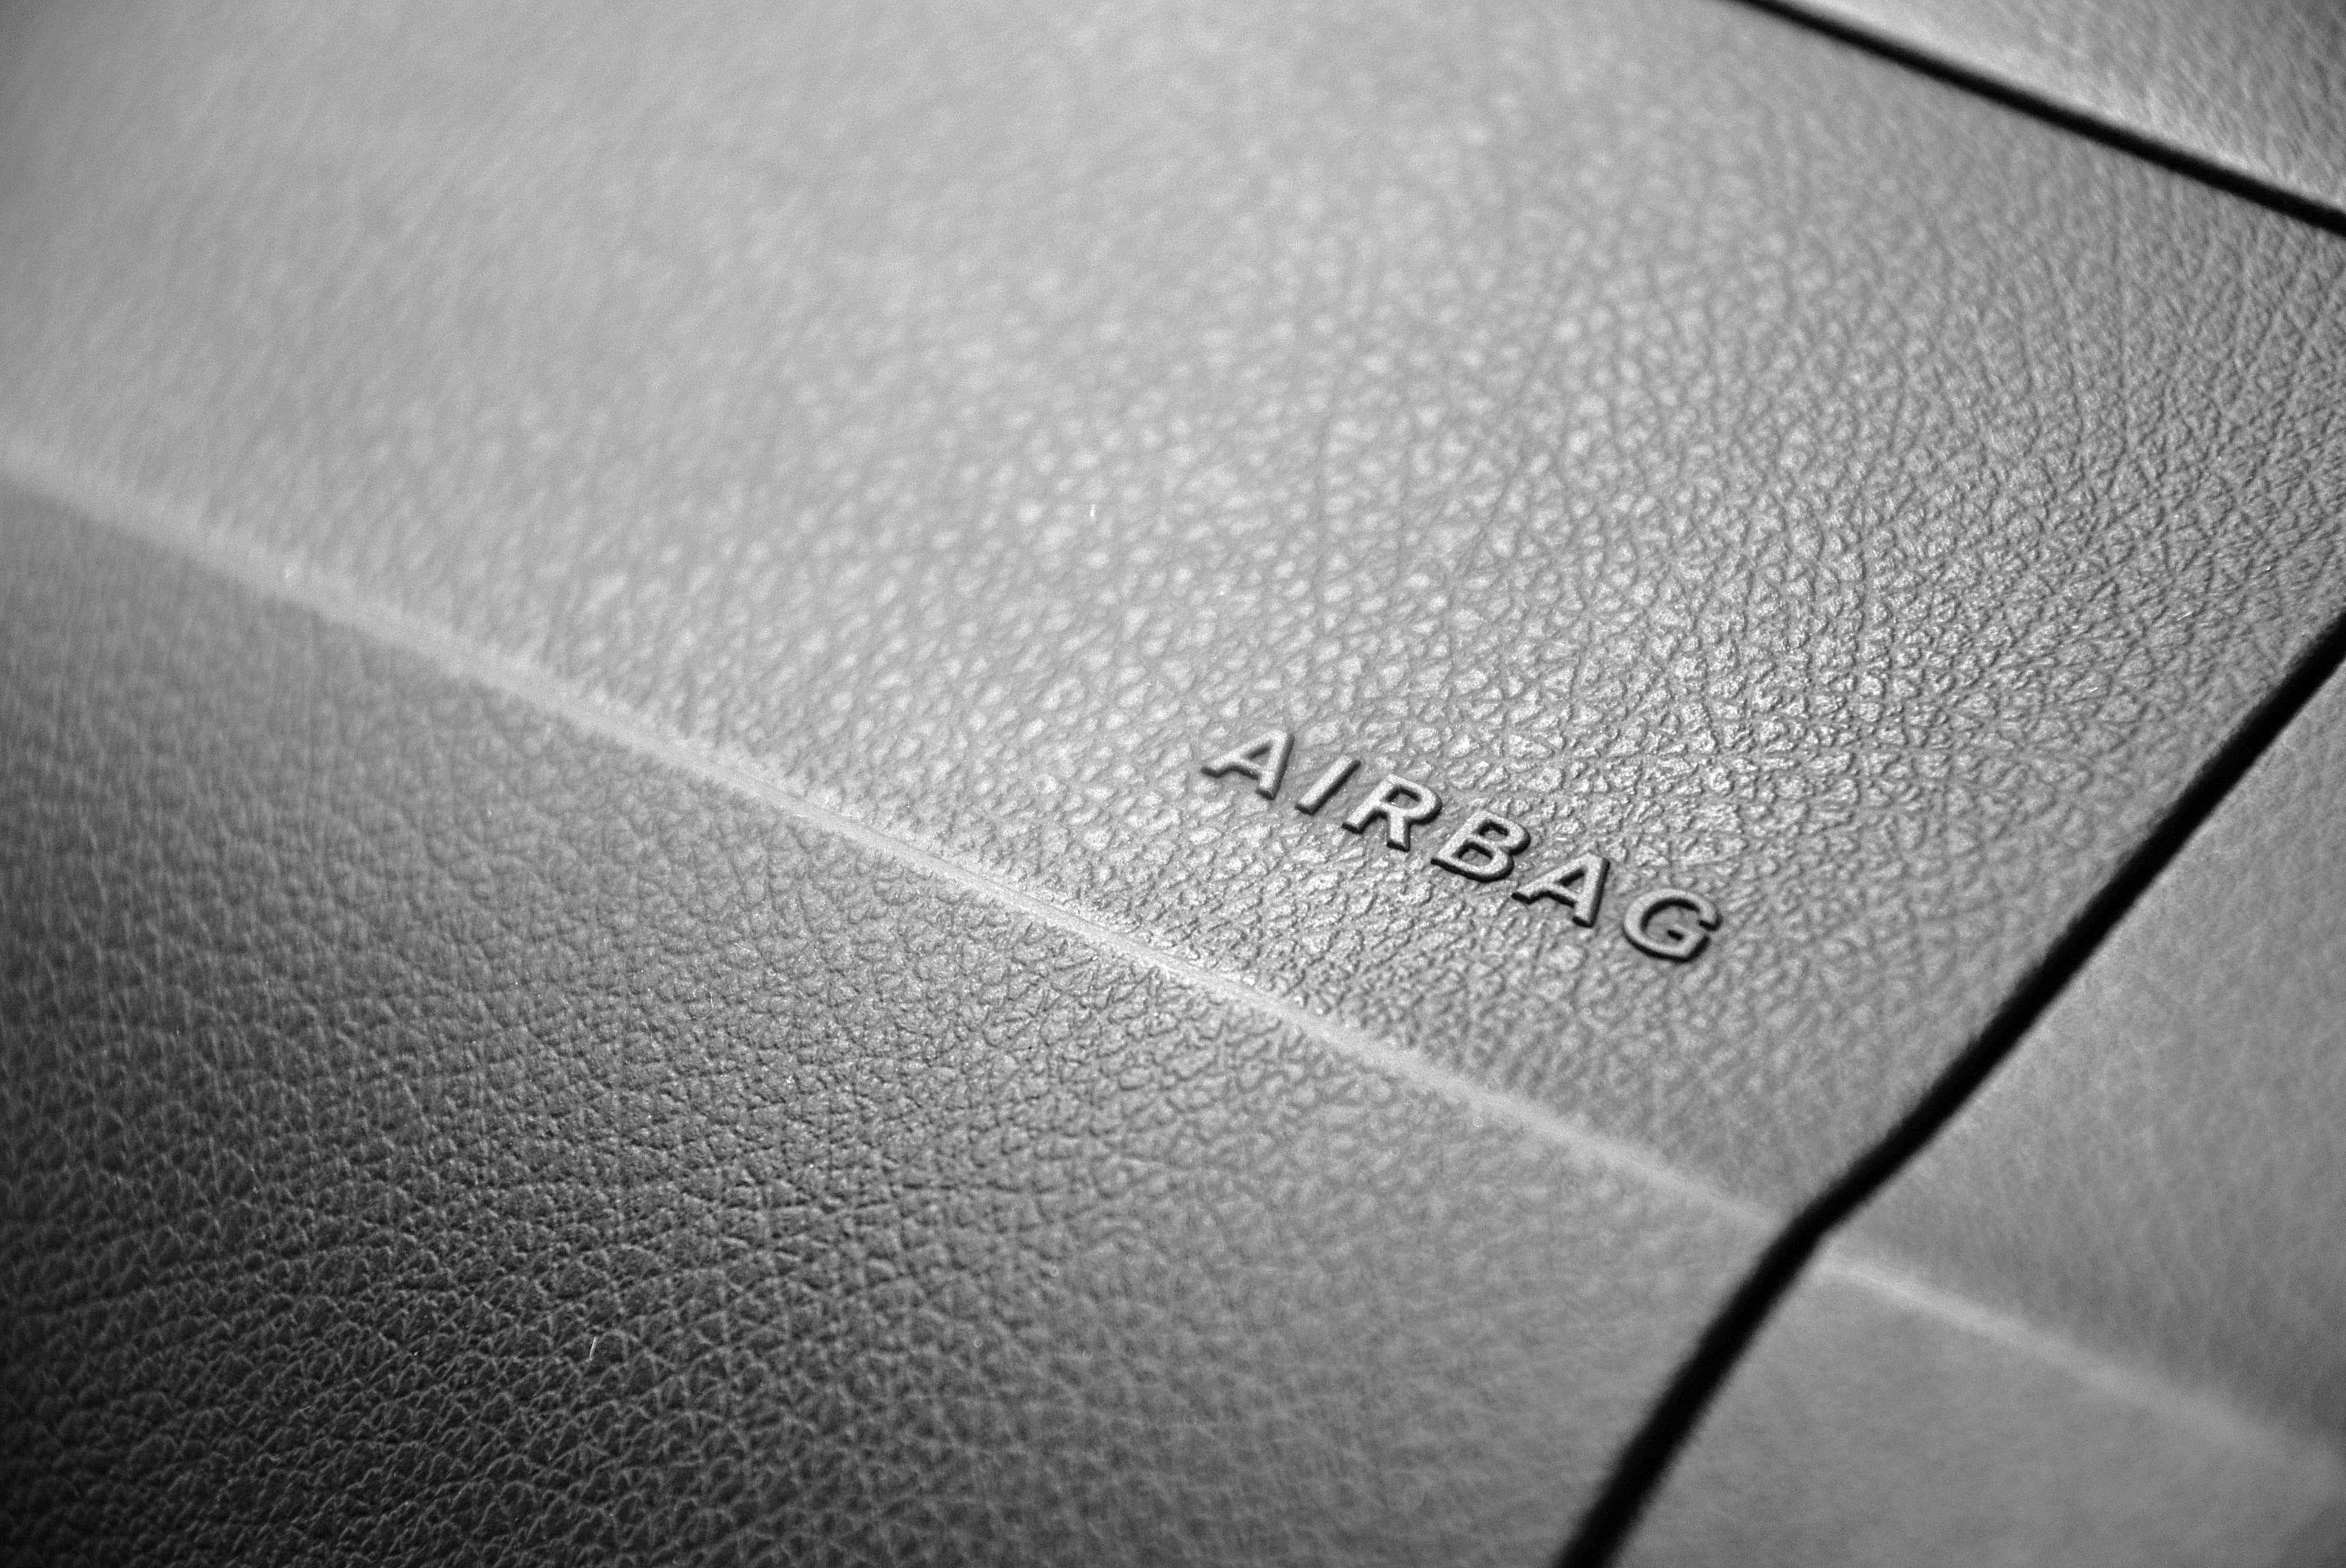 La UE alerta de problemas en los ‘airbags’ de Seat, Renault y Fiat